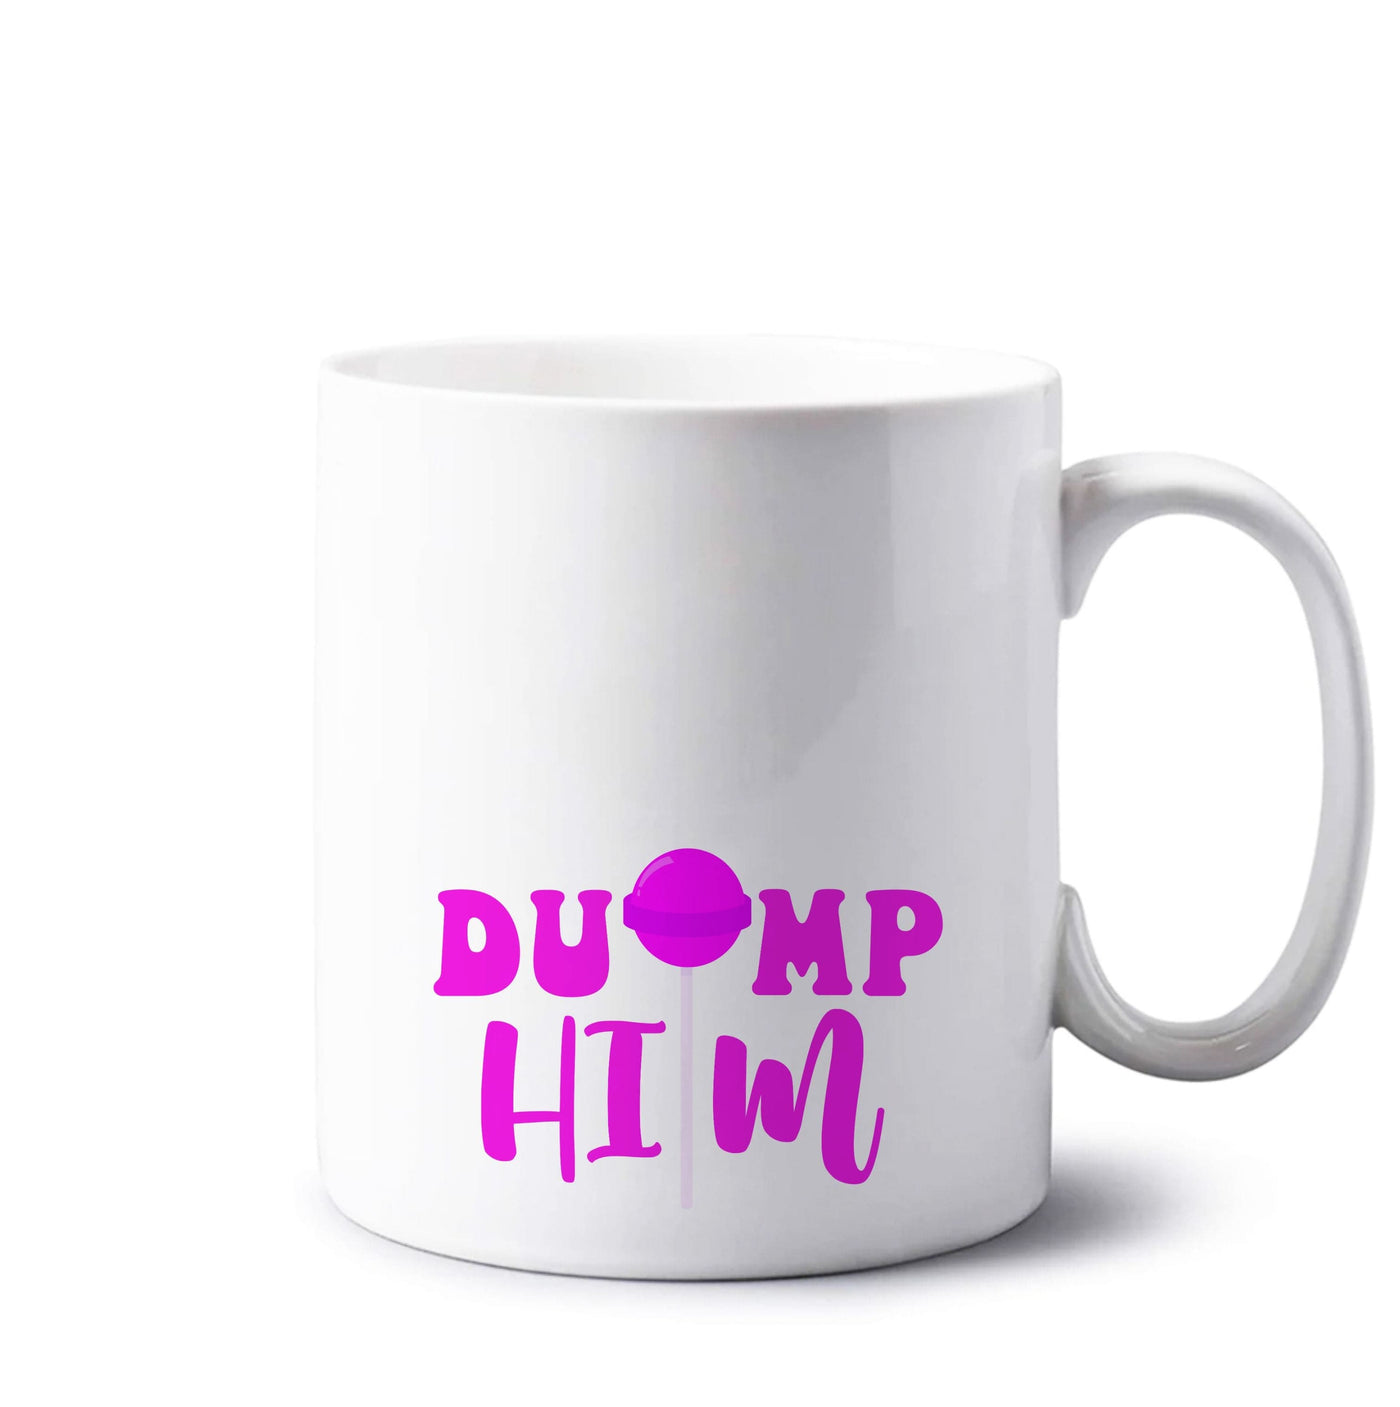 Dump Him - Summer Mug